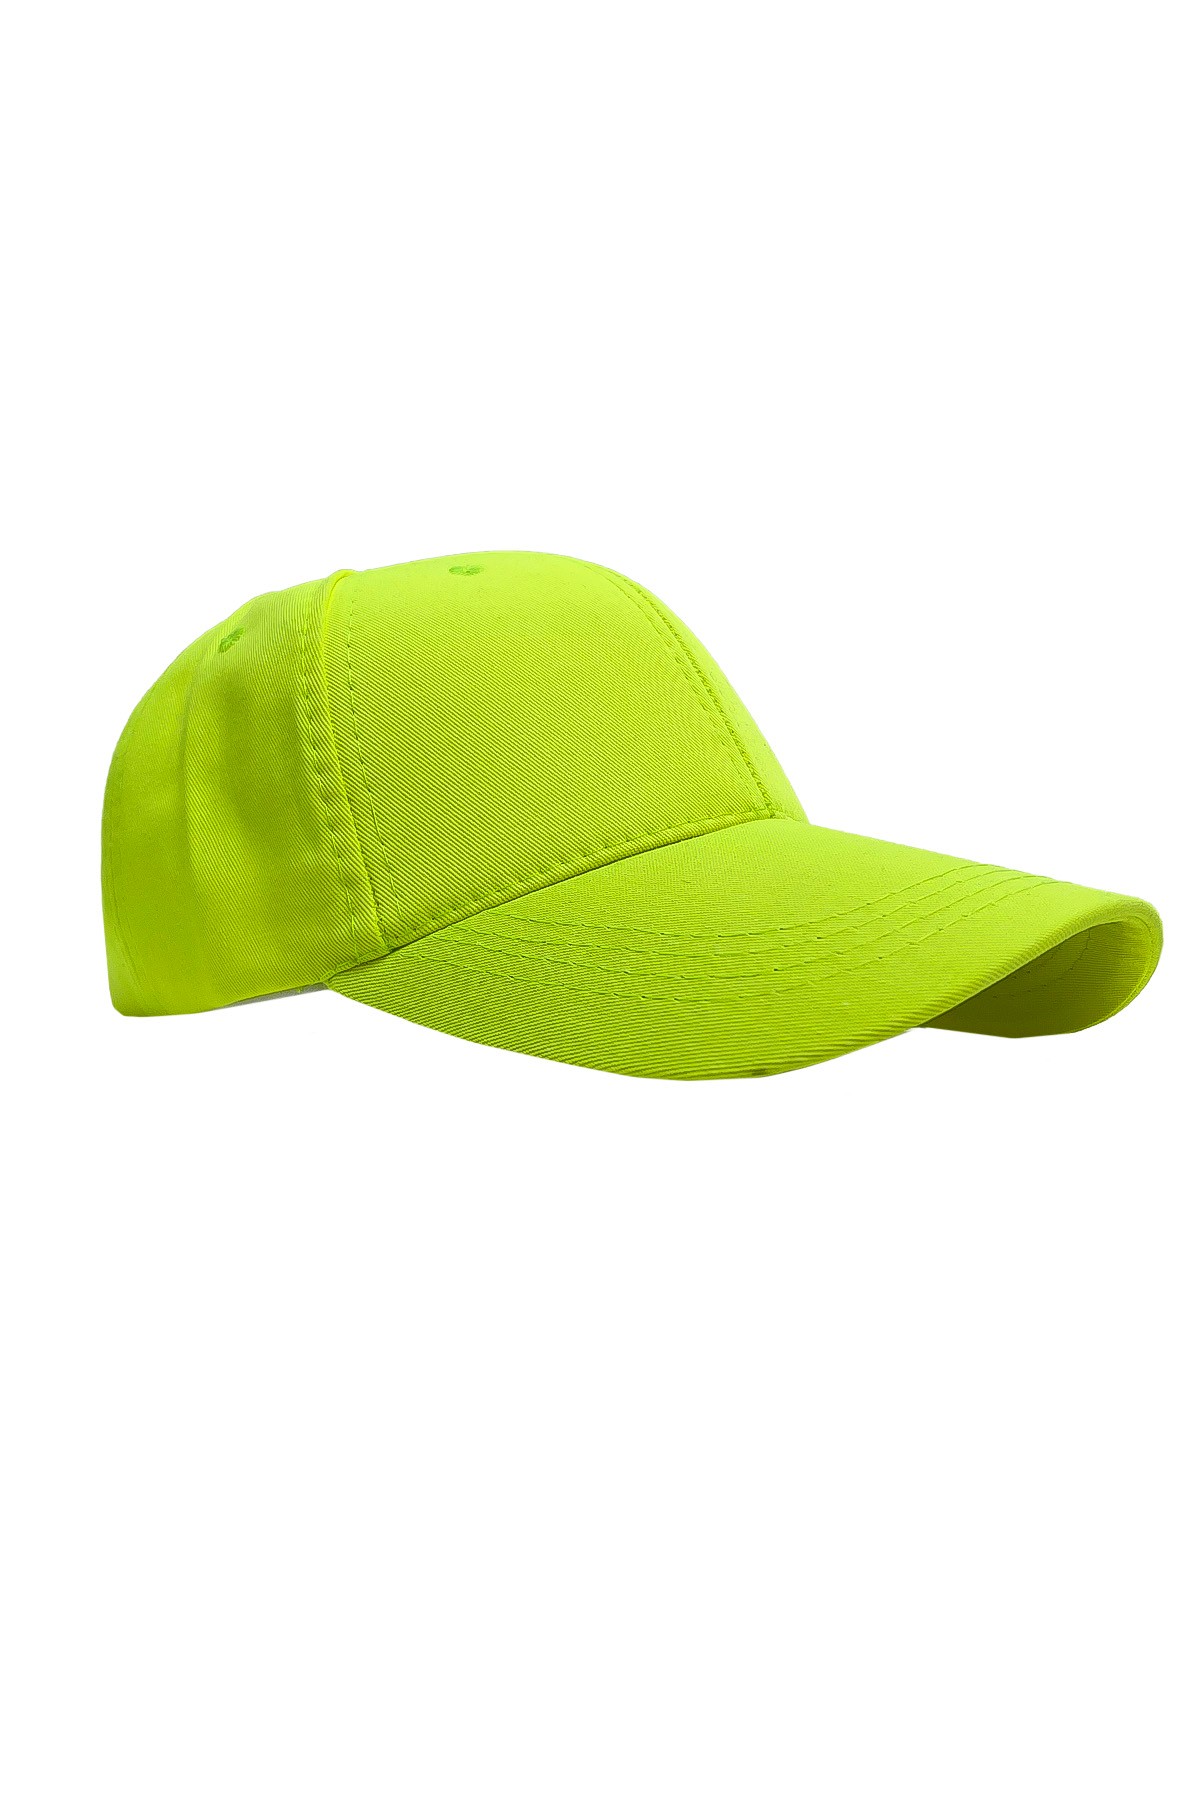 Kleo - Unisex Basic Şapka - NEON YEŞİL